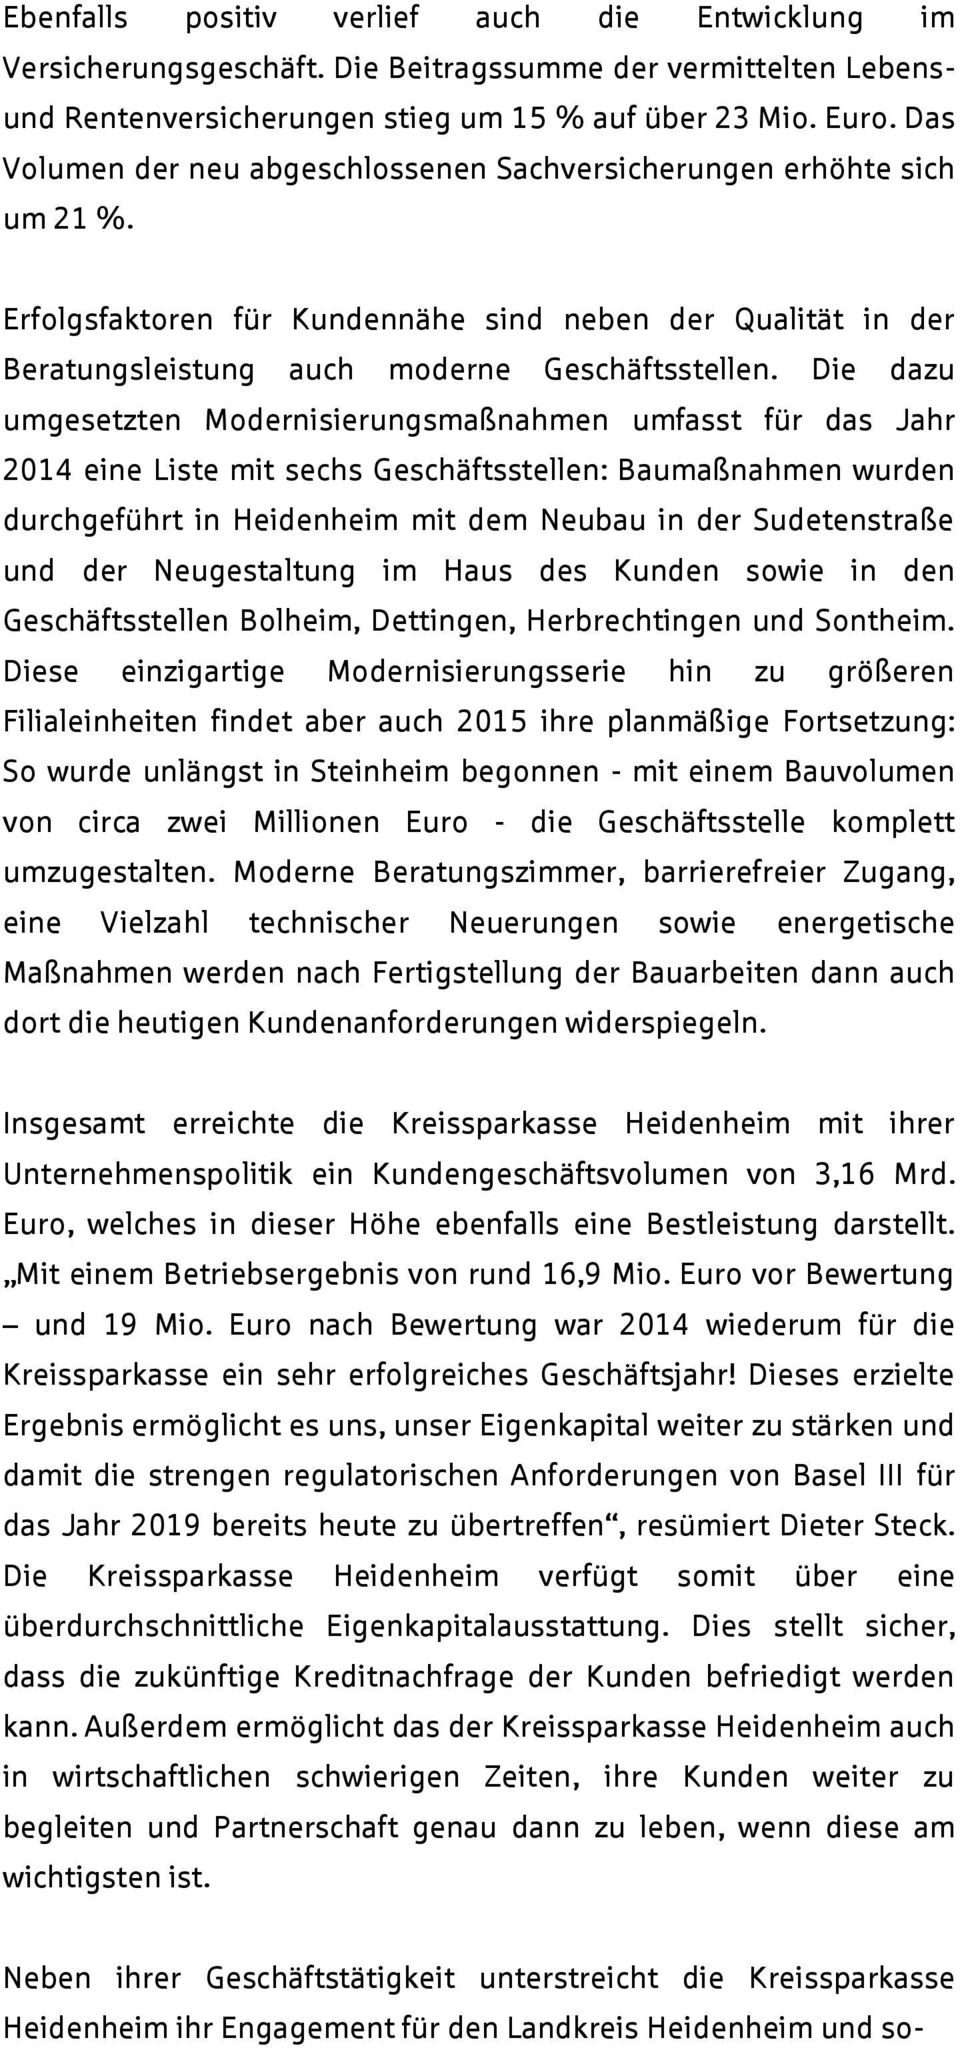 Die dazu umgesetzten Modernisierungsmaßnahmen umfasst für das Jahr 2014 eine Liste mit sechs Geschäftsstellen: Baumaßnahmen wurden durchgeführt in Heidenheim mit dem Neubau in der Sudetenstraße und